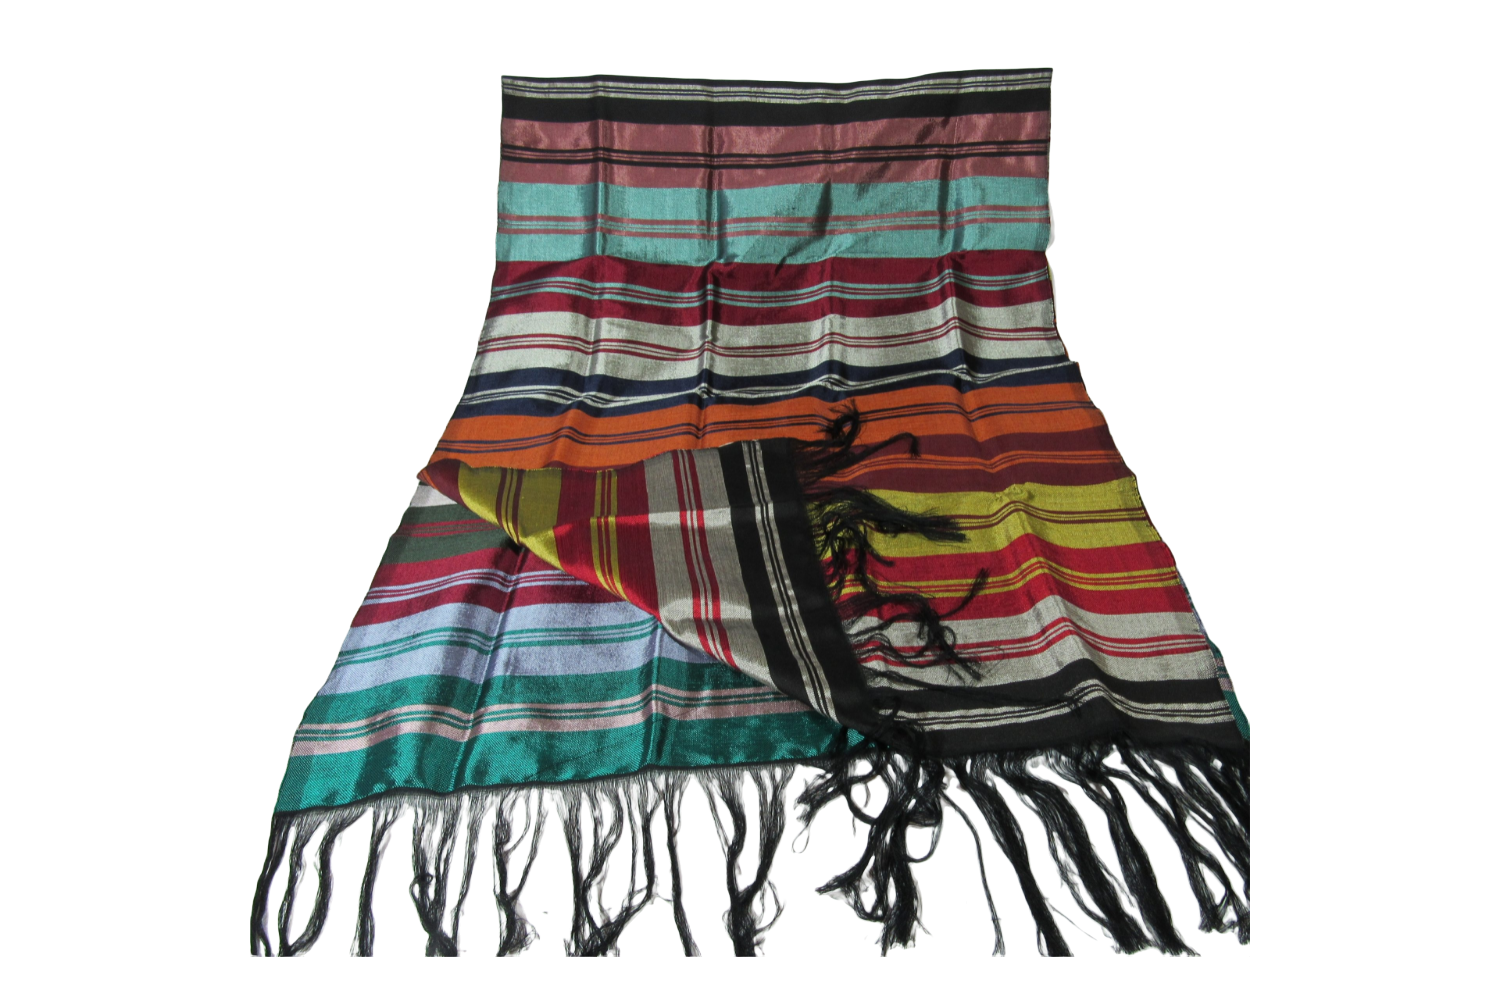 https://shop.marocnatureculture.org/wp-content/uploads/2022/02/foulard-agave-100.png